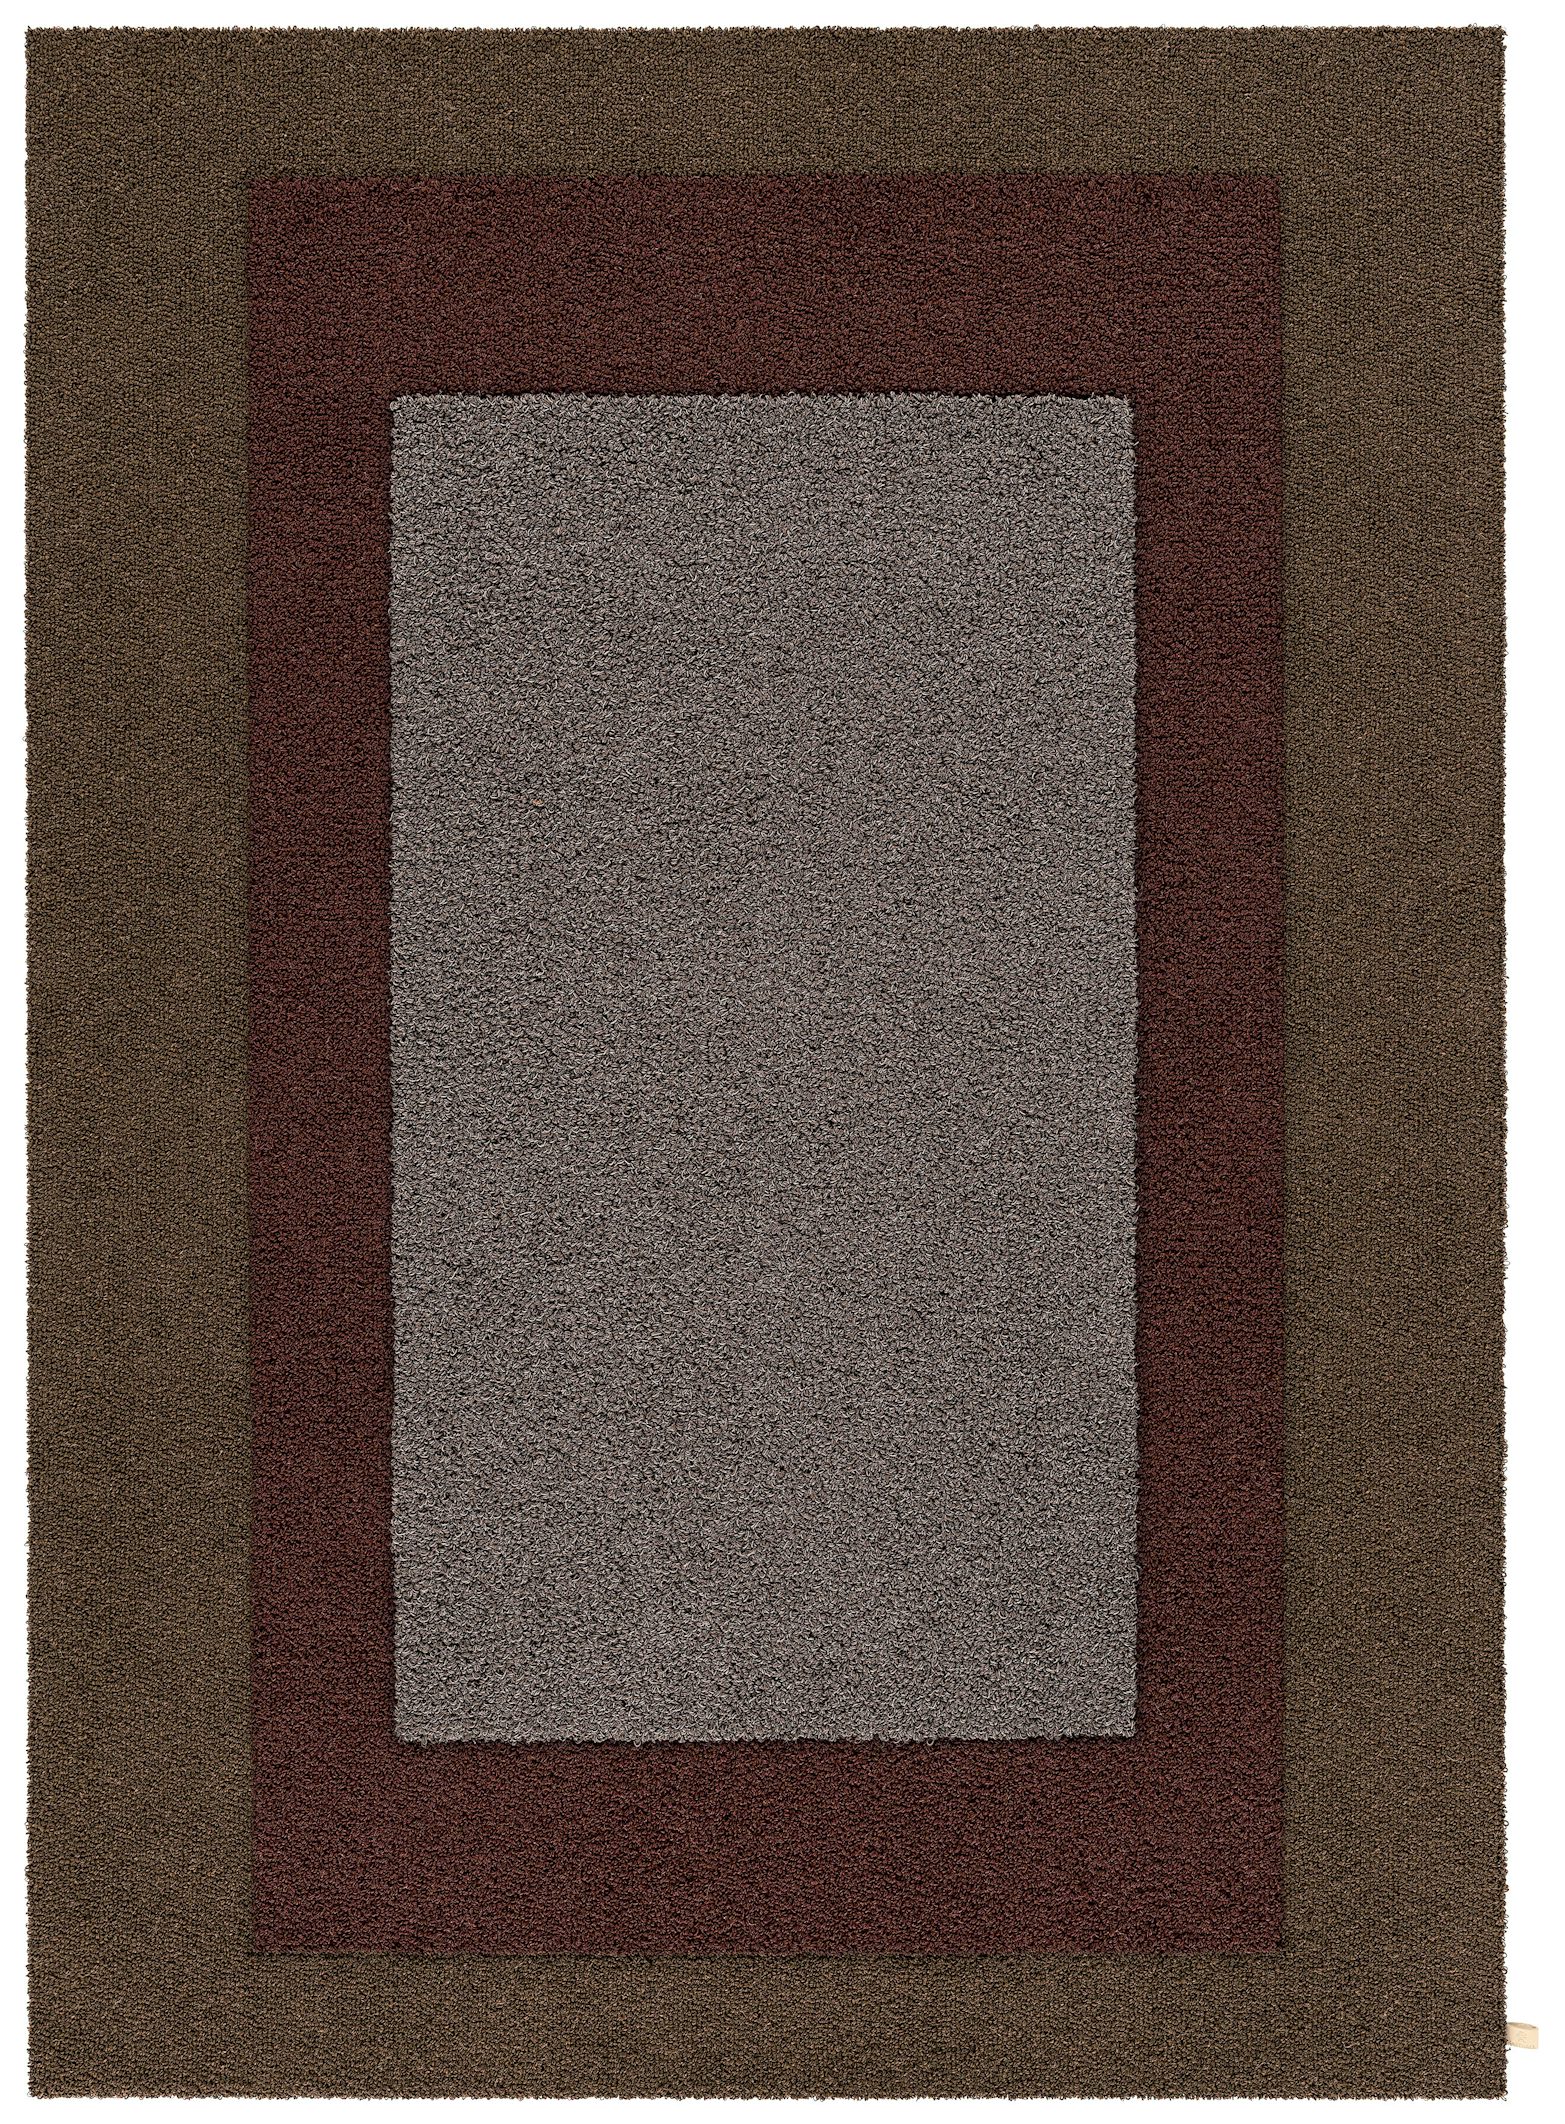 Kasthall Tegel Center Carpet 1